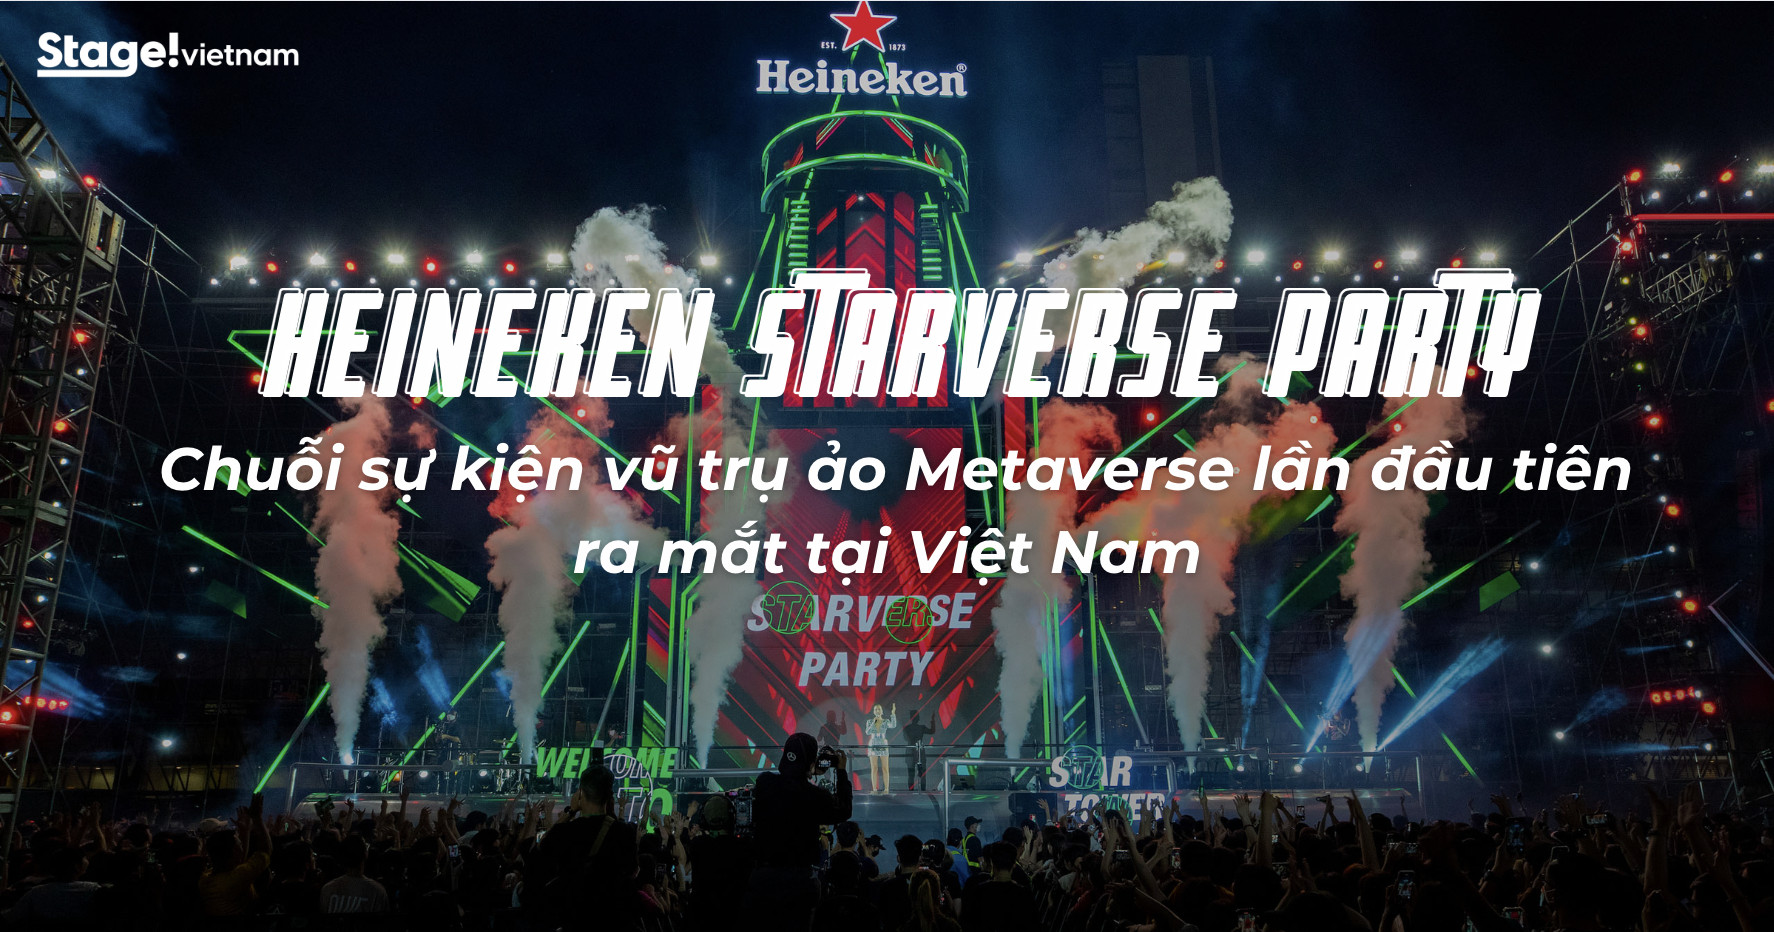 Heineken Starverse Party: Chuỗi sự kiện vũ trụ ảo lần đầu tiên tại Việt Nam  - VietNam Event Group - VEG